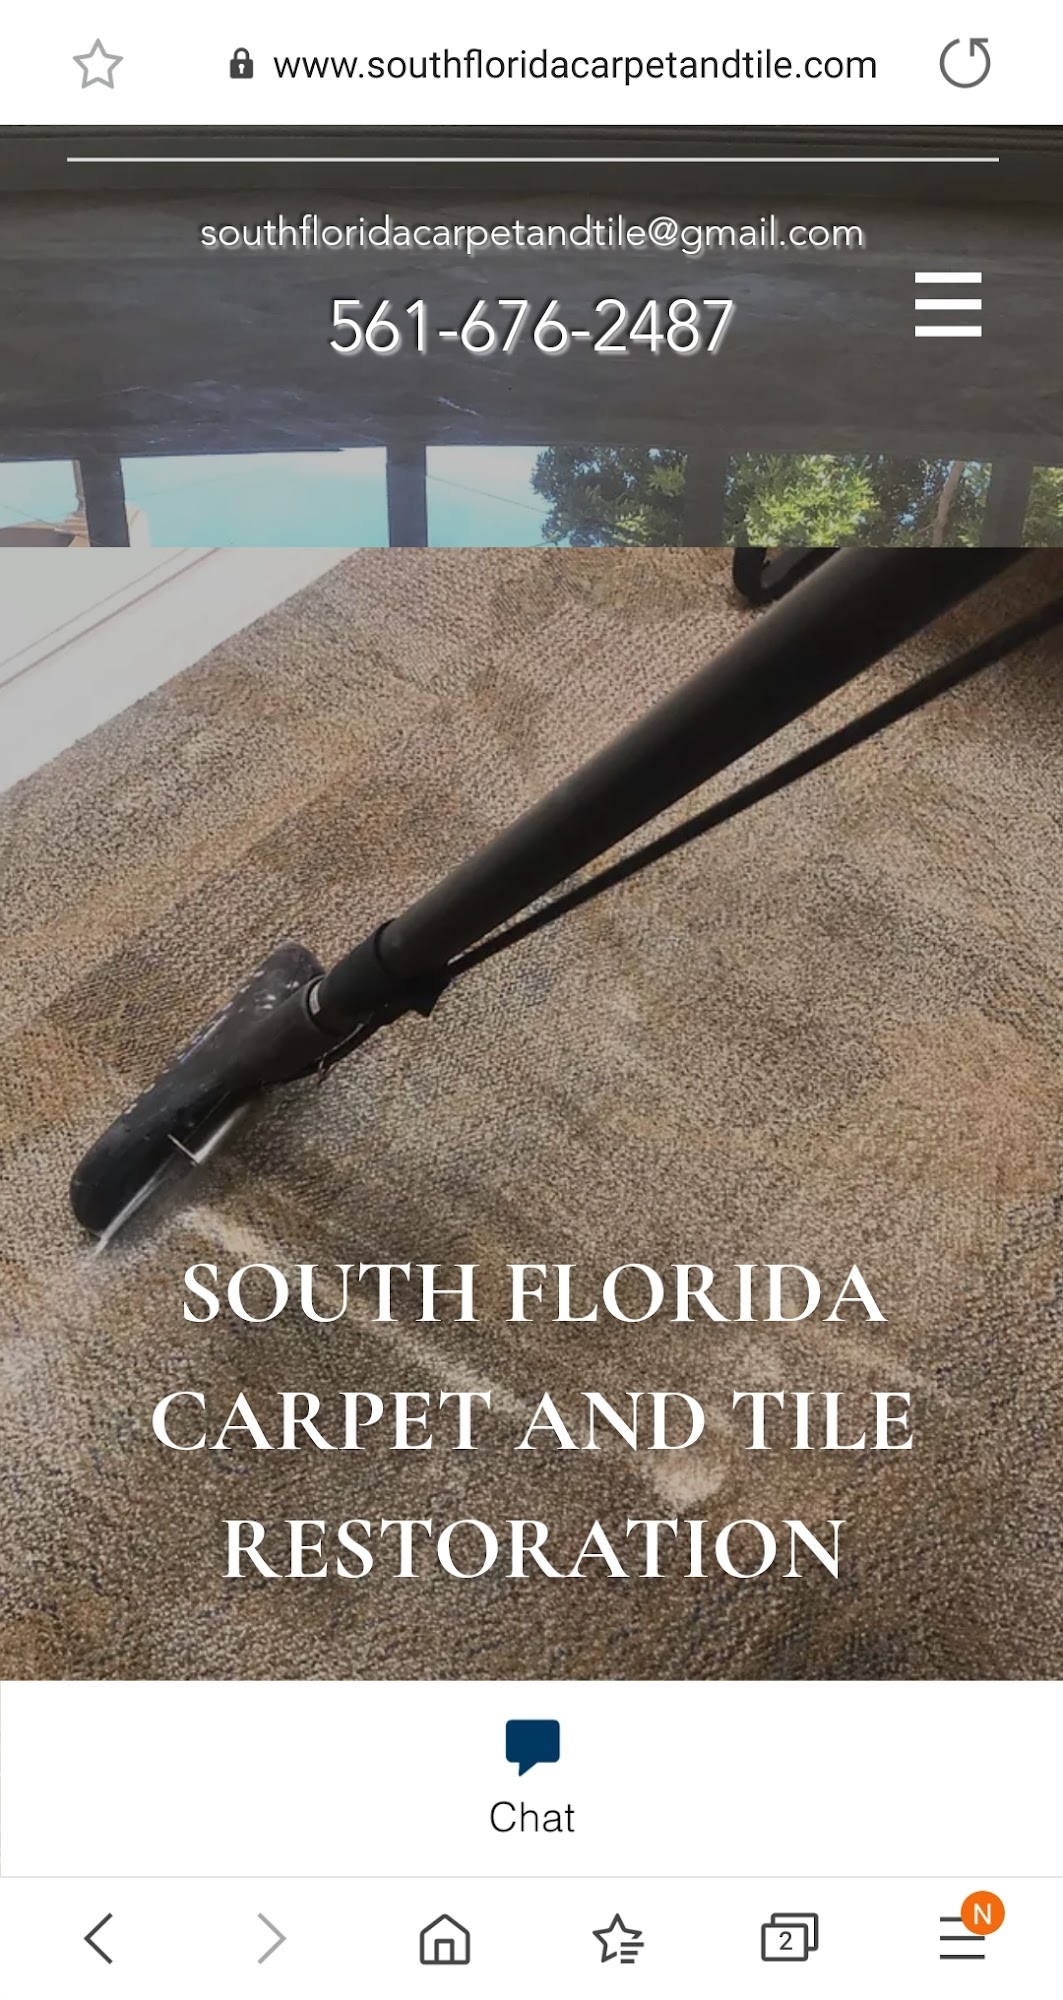 South Florida Carpet and Tile Restoration